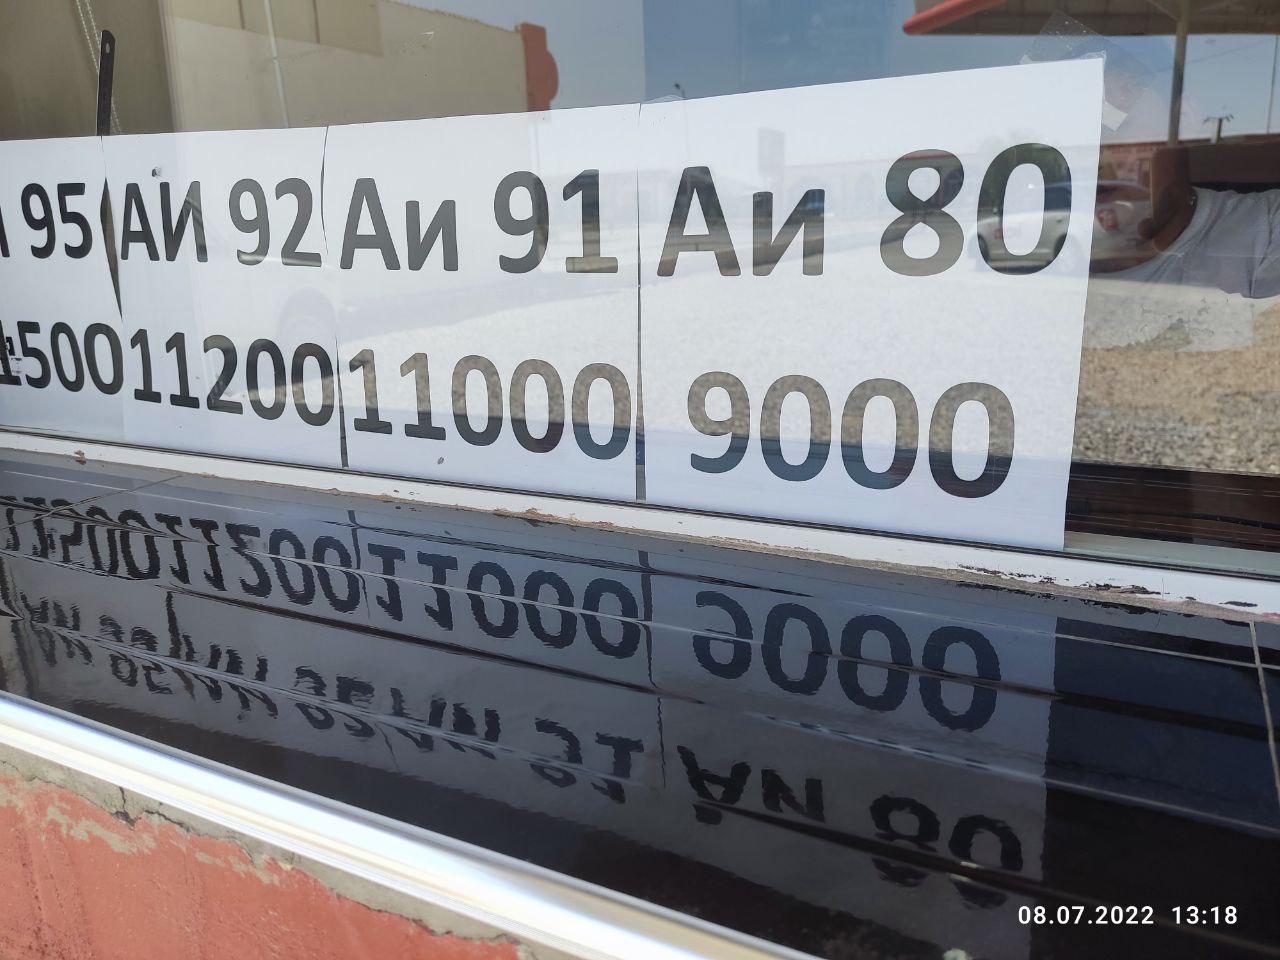 9000 сумов за литр самого дешевого бензина - новая реальность Узбекистана - 1